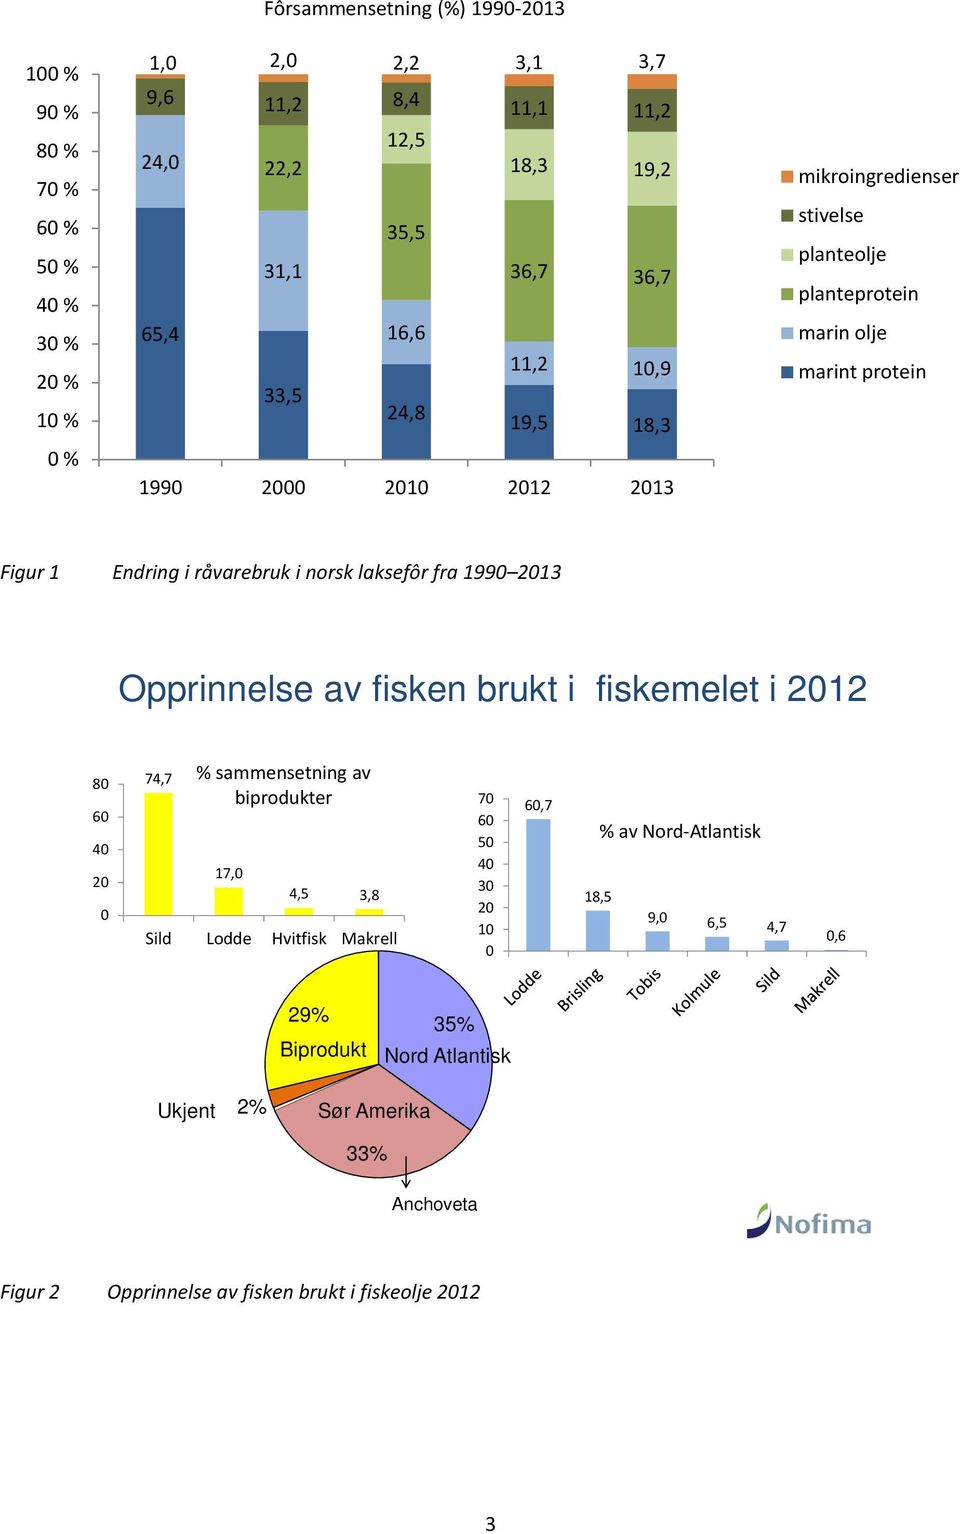 norsk laksefôr fra 1990 2013 Opprinnelse av fisken brukt i fiskemelet i 2012 80 60 40 20 0 74,7 % sammensetning av biprodukter 17,0 4,5 3,8 Sild Lodde Hvitfisk Makrell 70 60 50